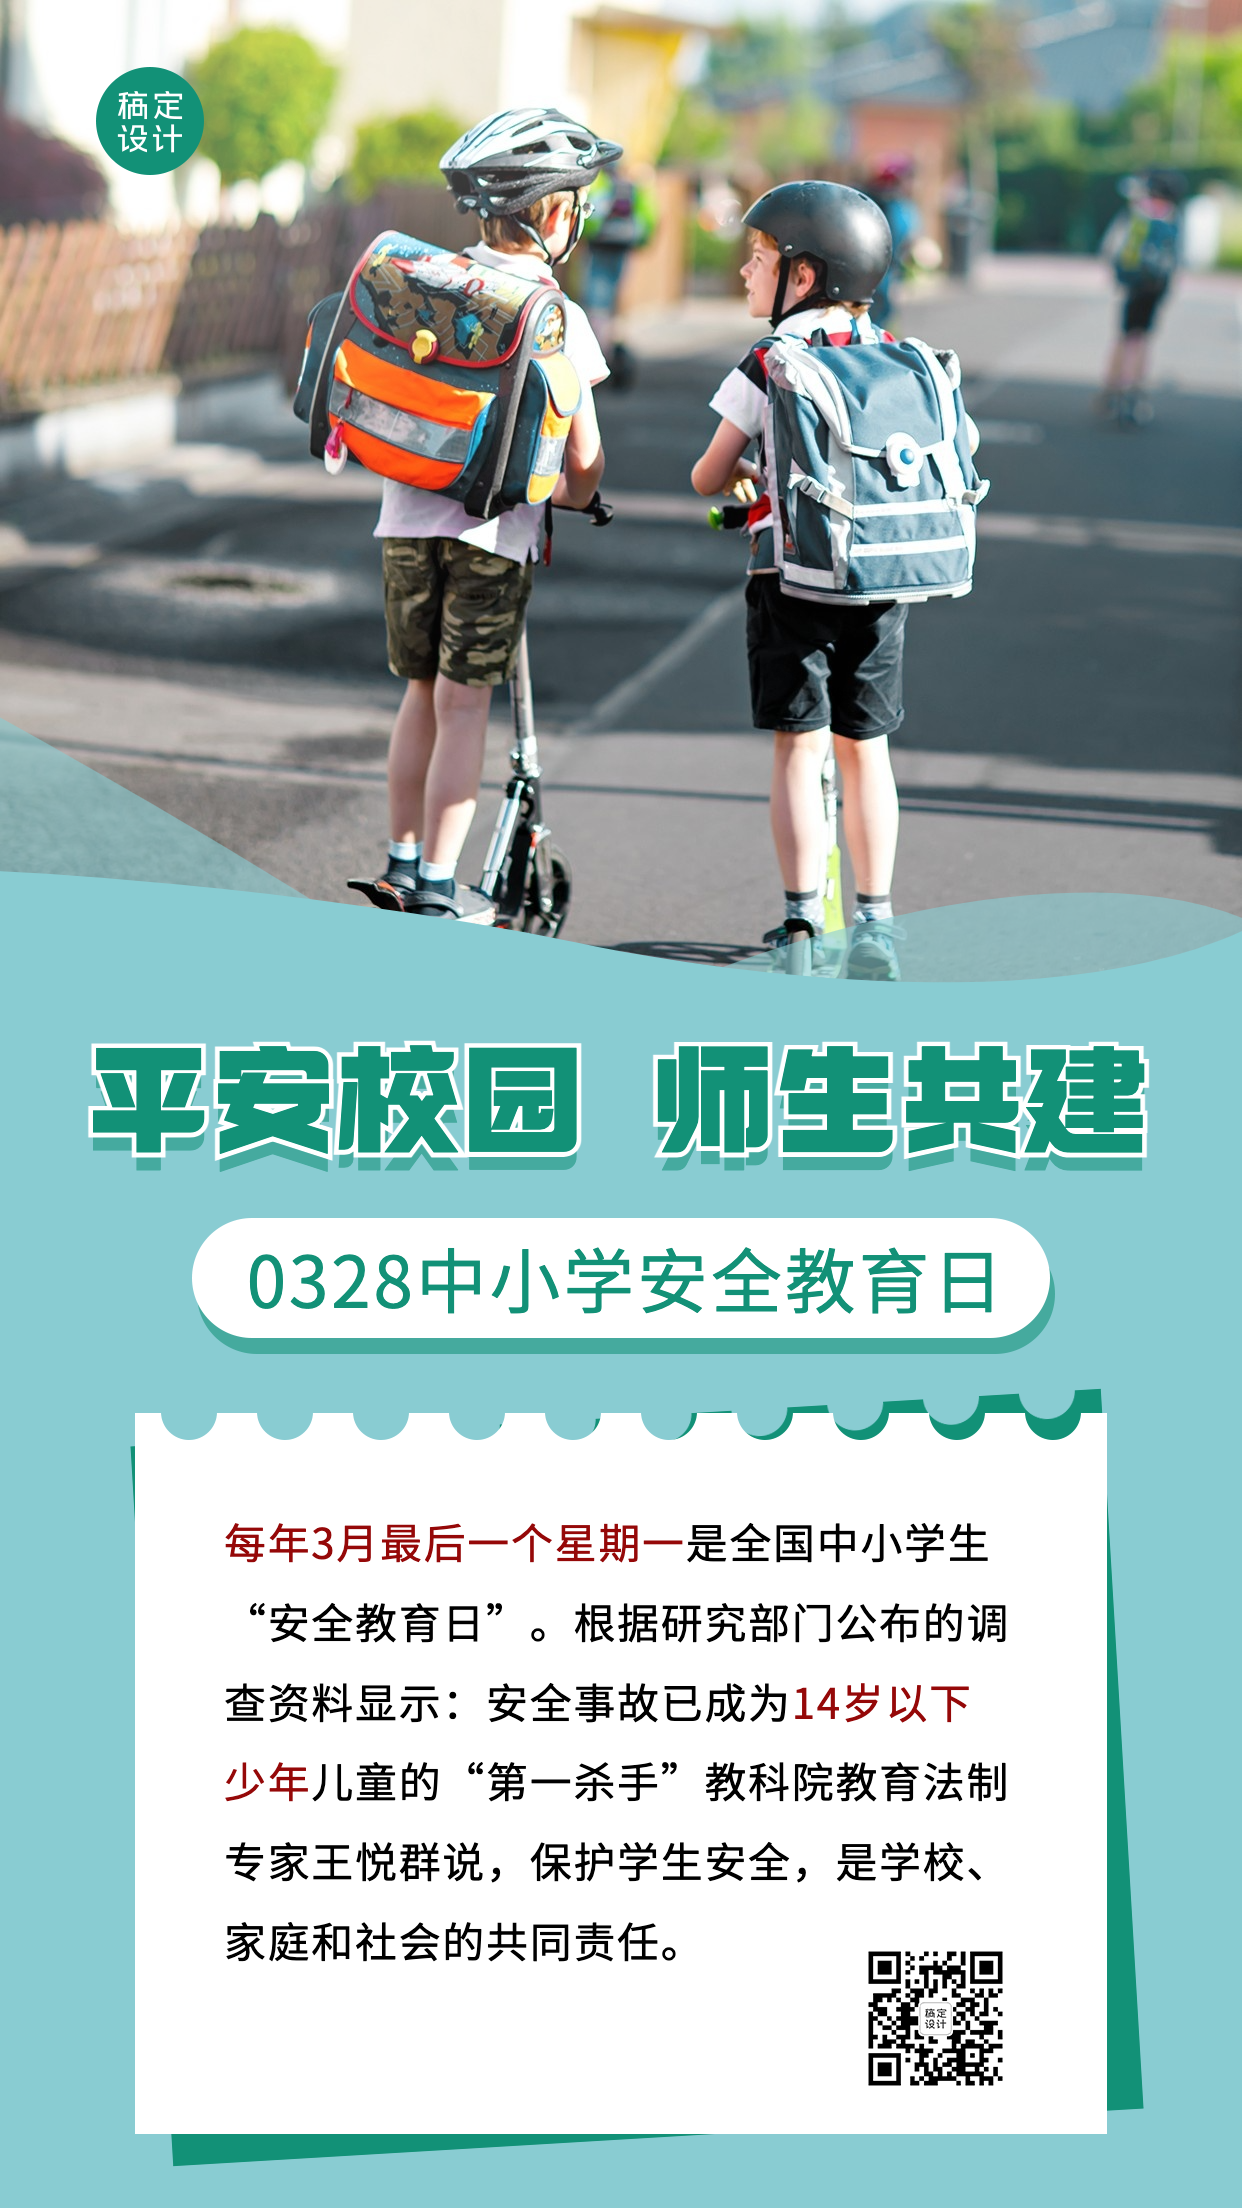 3.28中小学安全教育日节日科普宣传简约实景手机海报